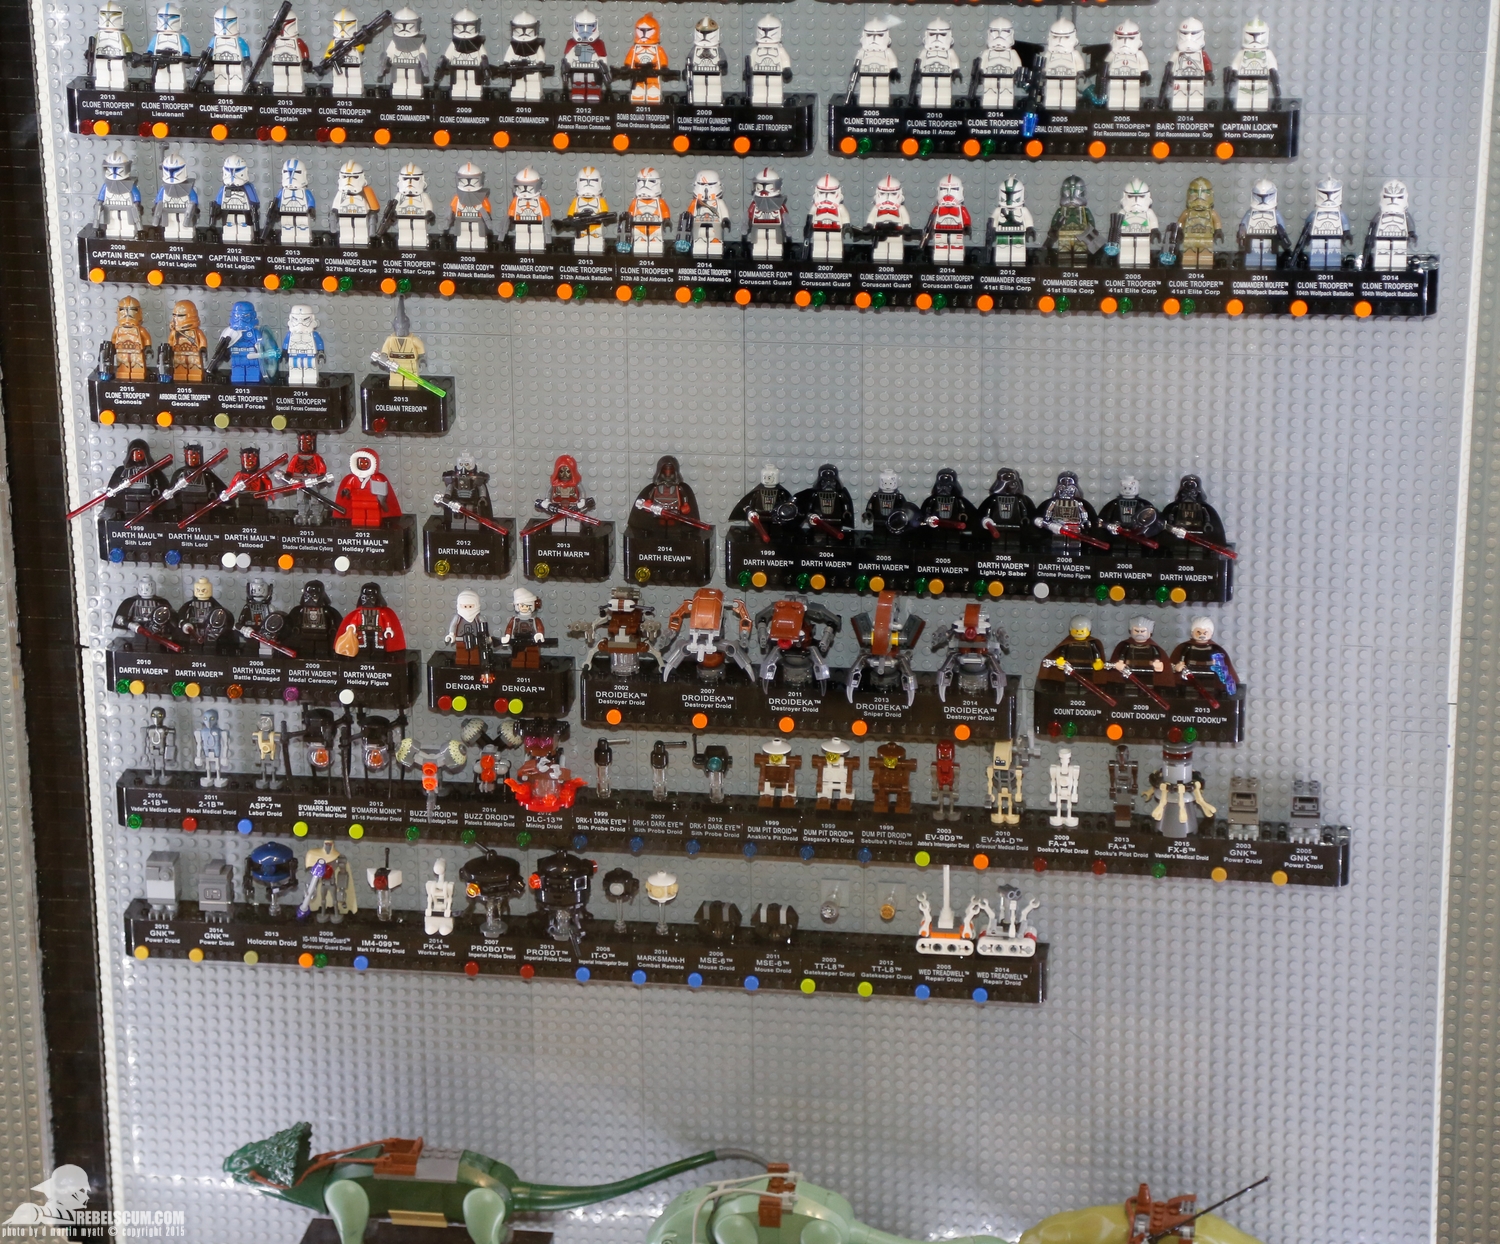 2015-International-Toy-Fair-Star-Wars-Lego-158.jpg